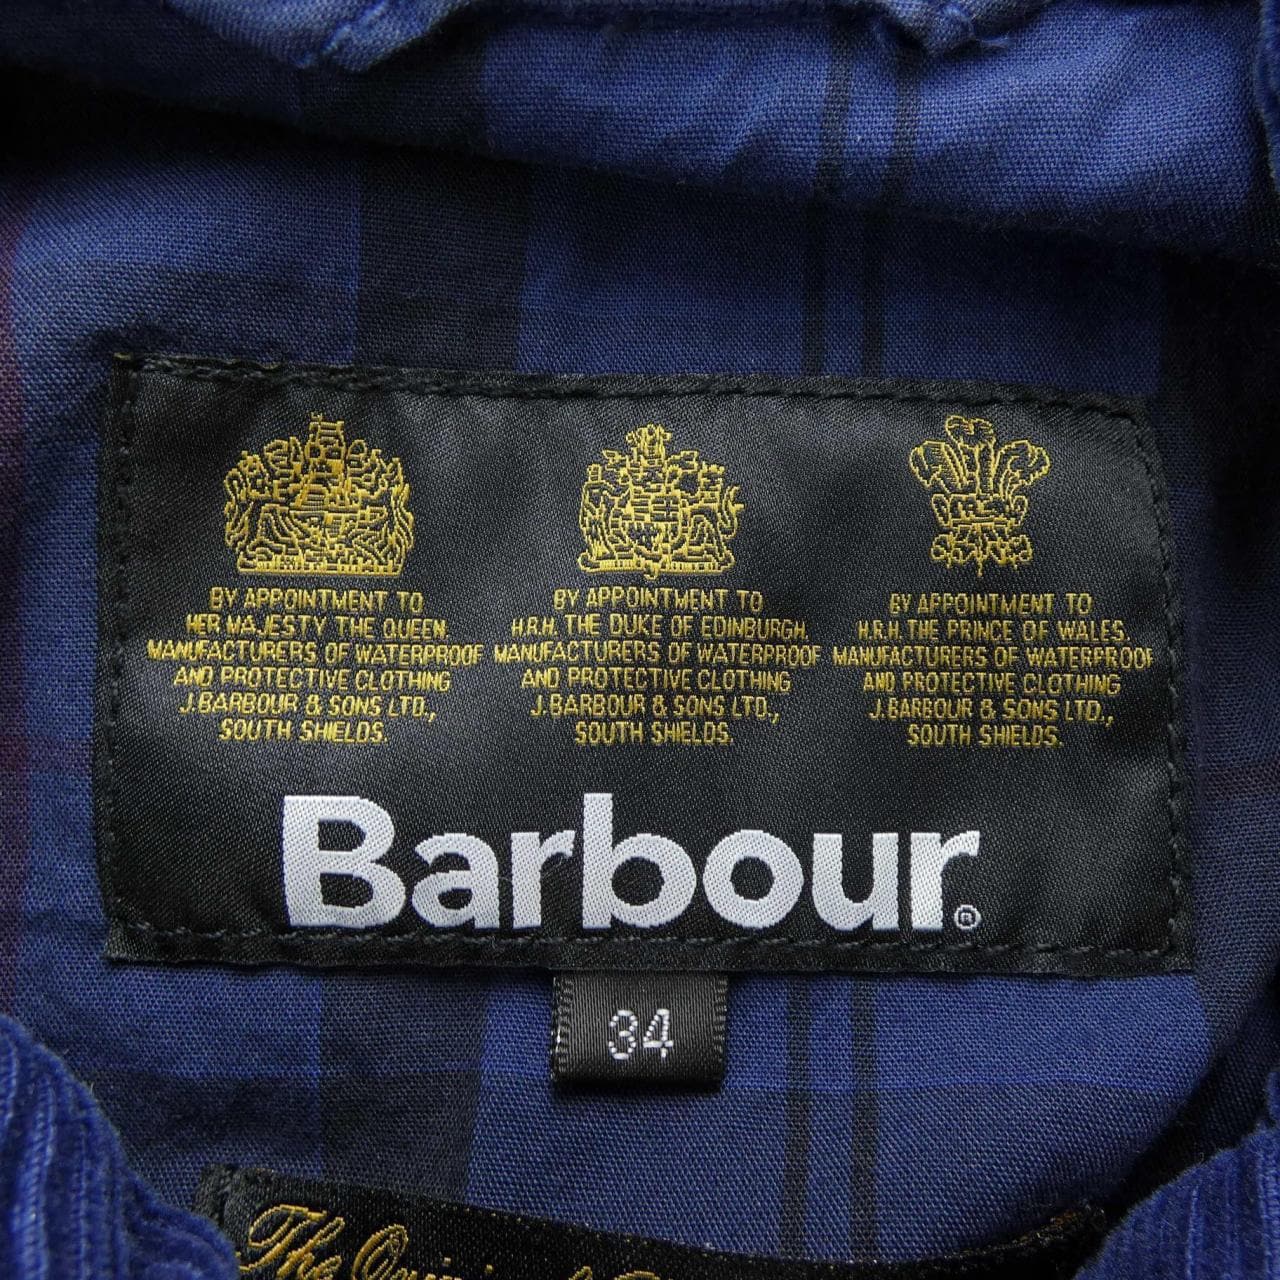 BARBOUR coat